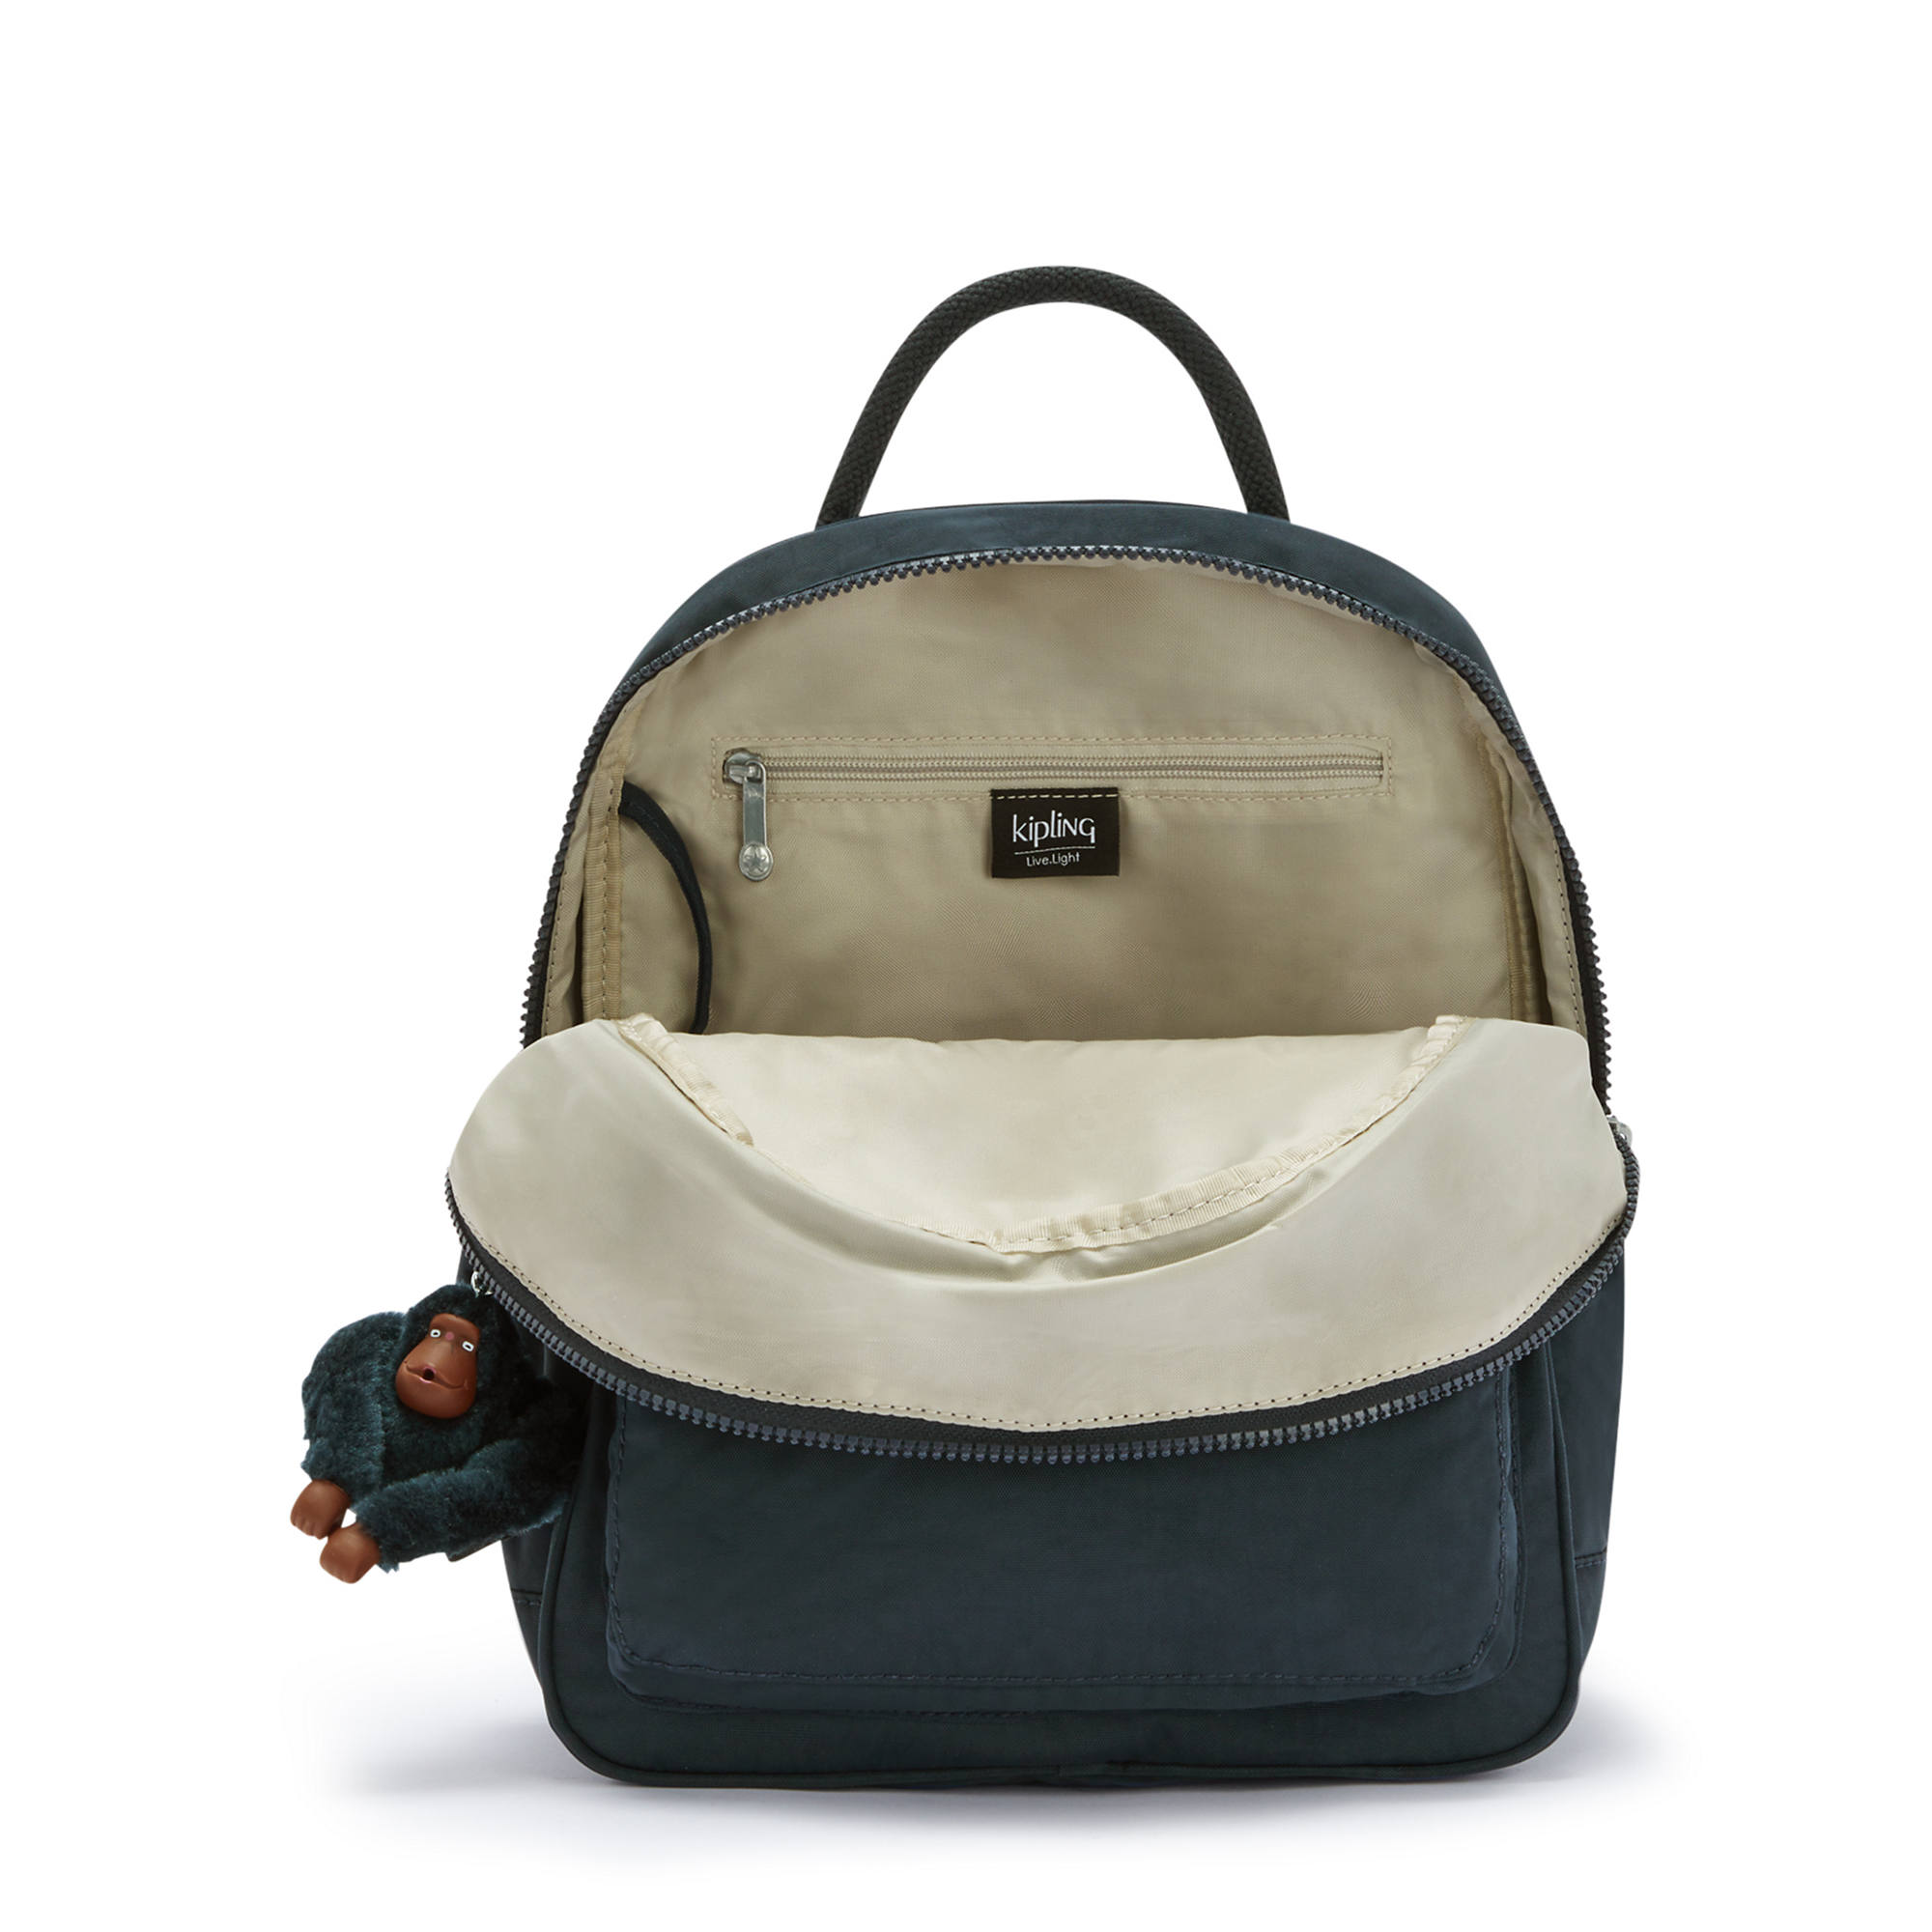 Kipling Rose Small Backpack | eBay